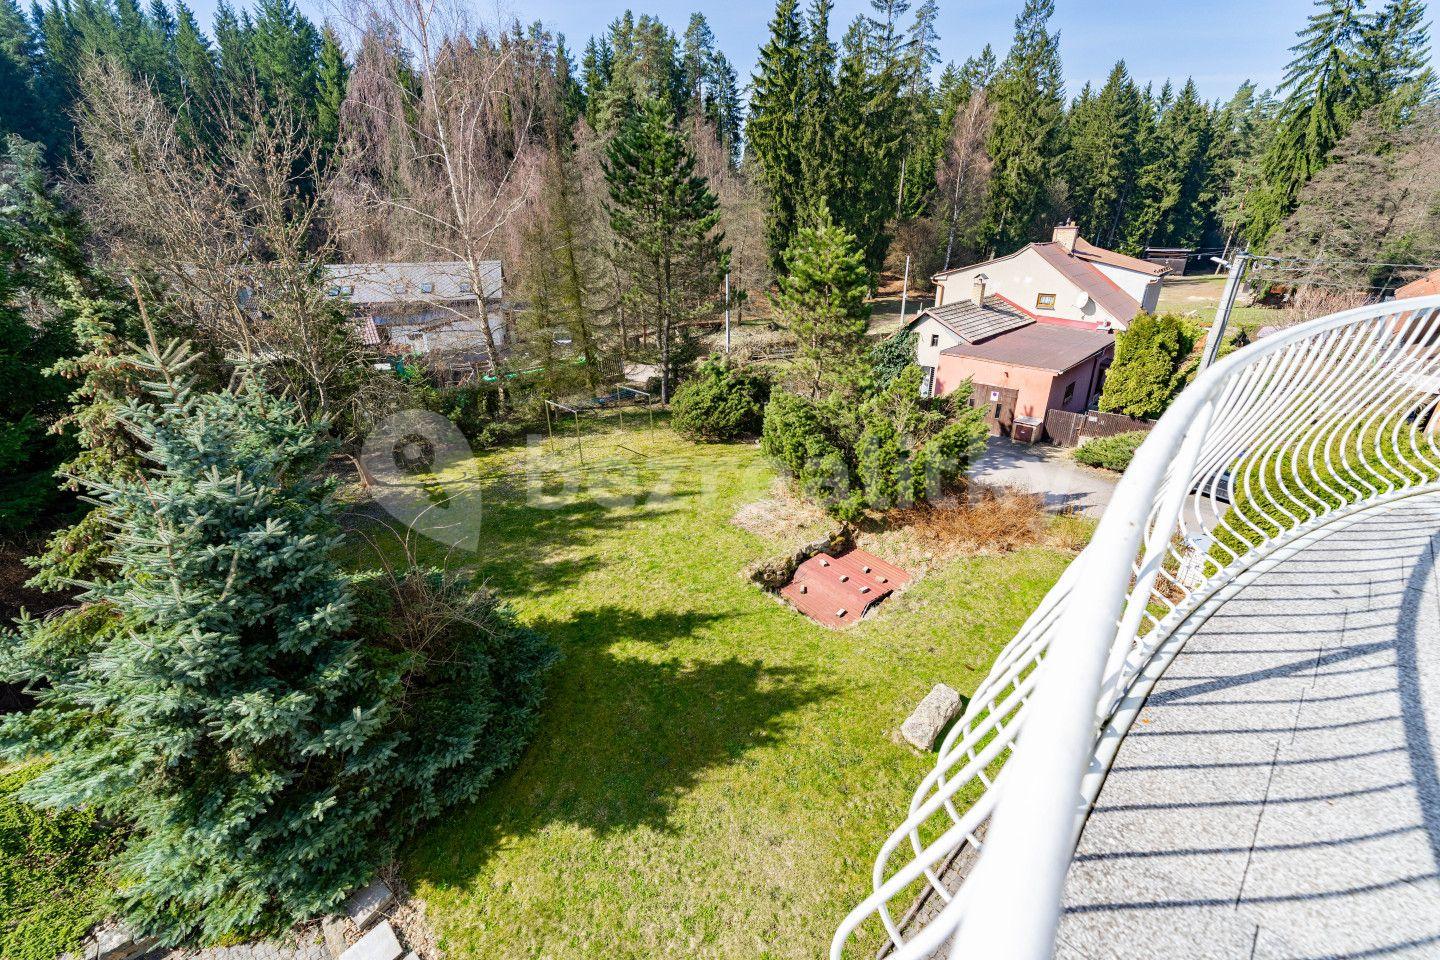 non-residential property for sale, 270 m², Hamry nad Sázavou, Vysočina Region